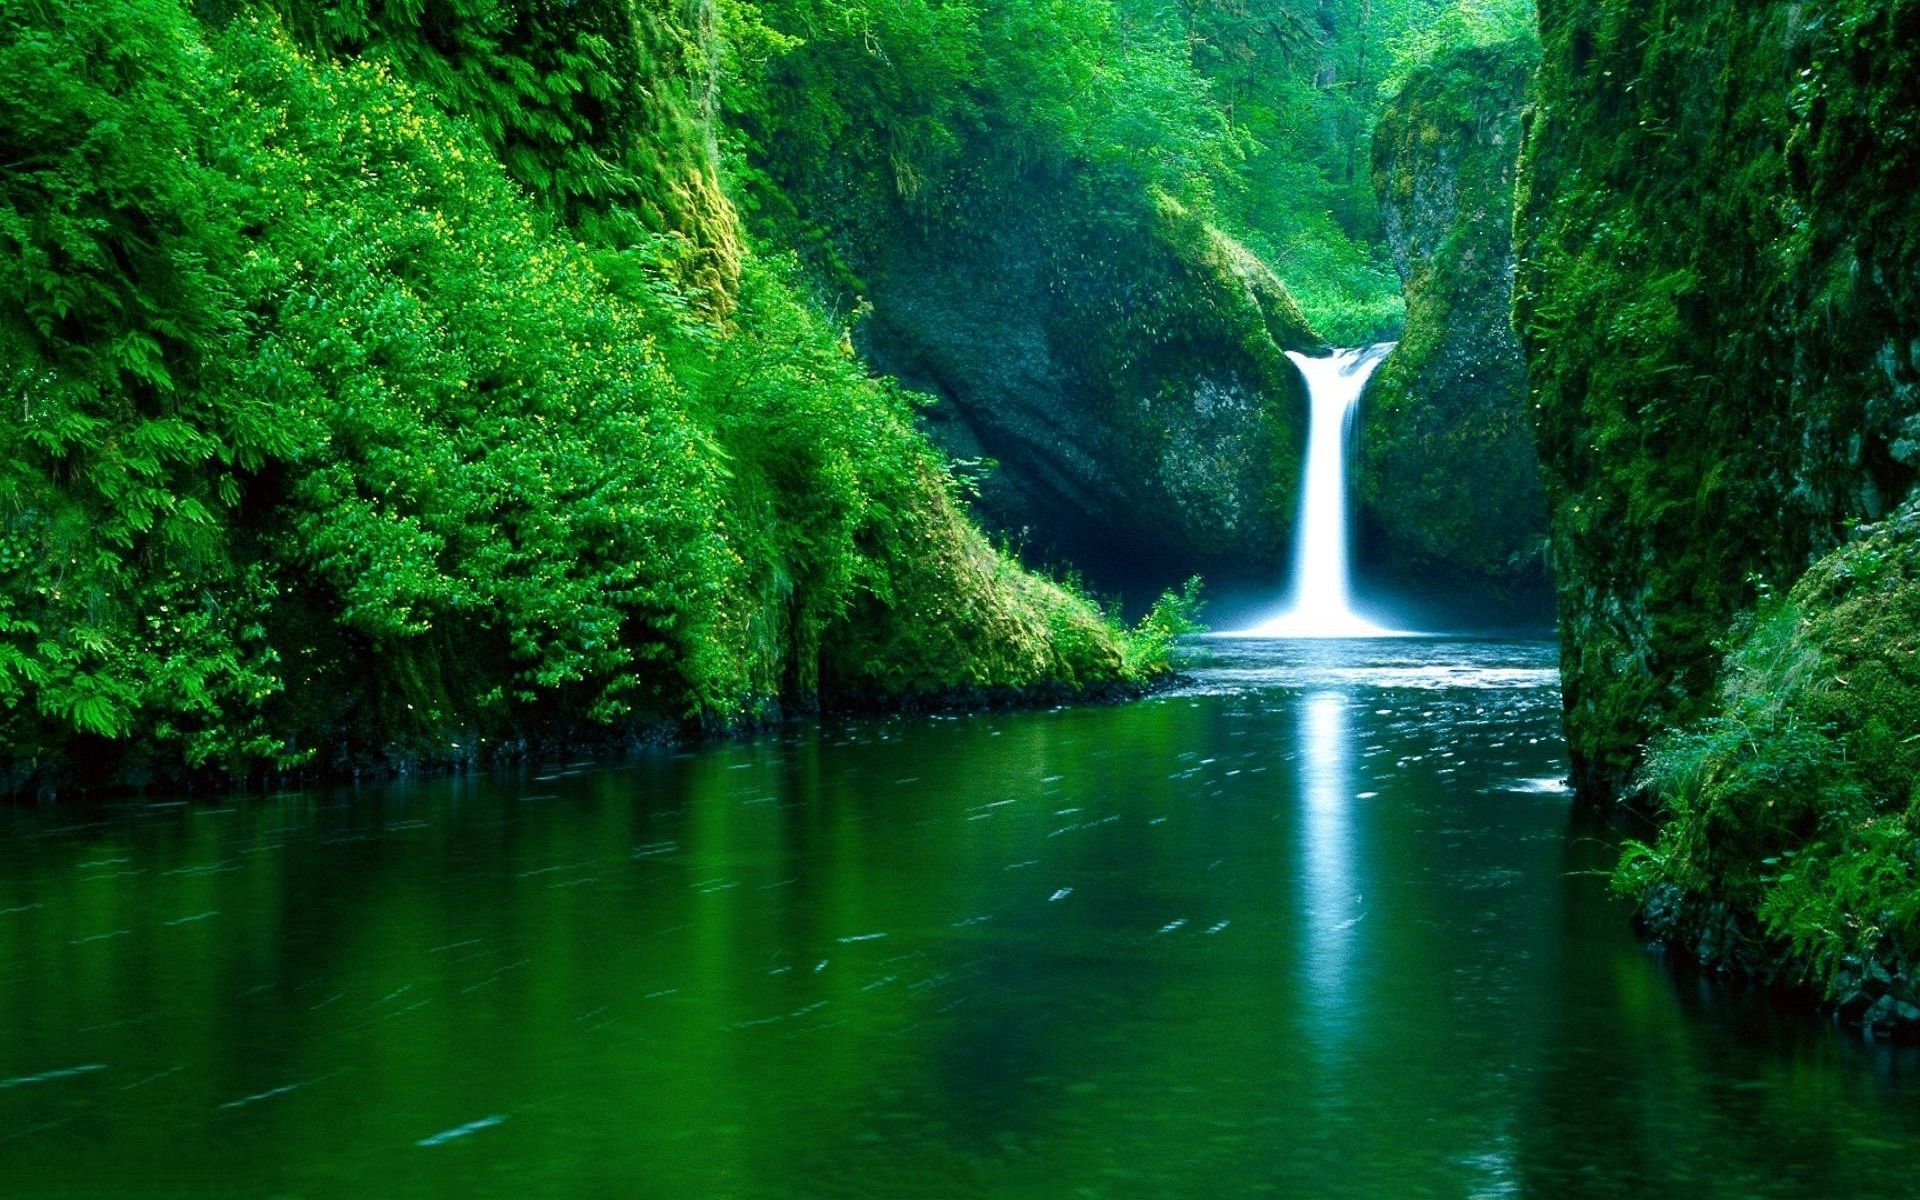 عکس زیبا و رویایی از آبشار بلند در کشور هند مخصوص ویندوز 